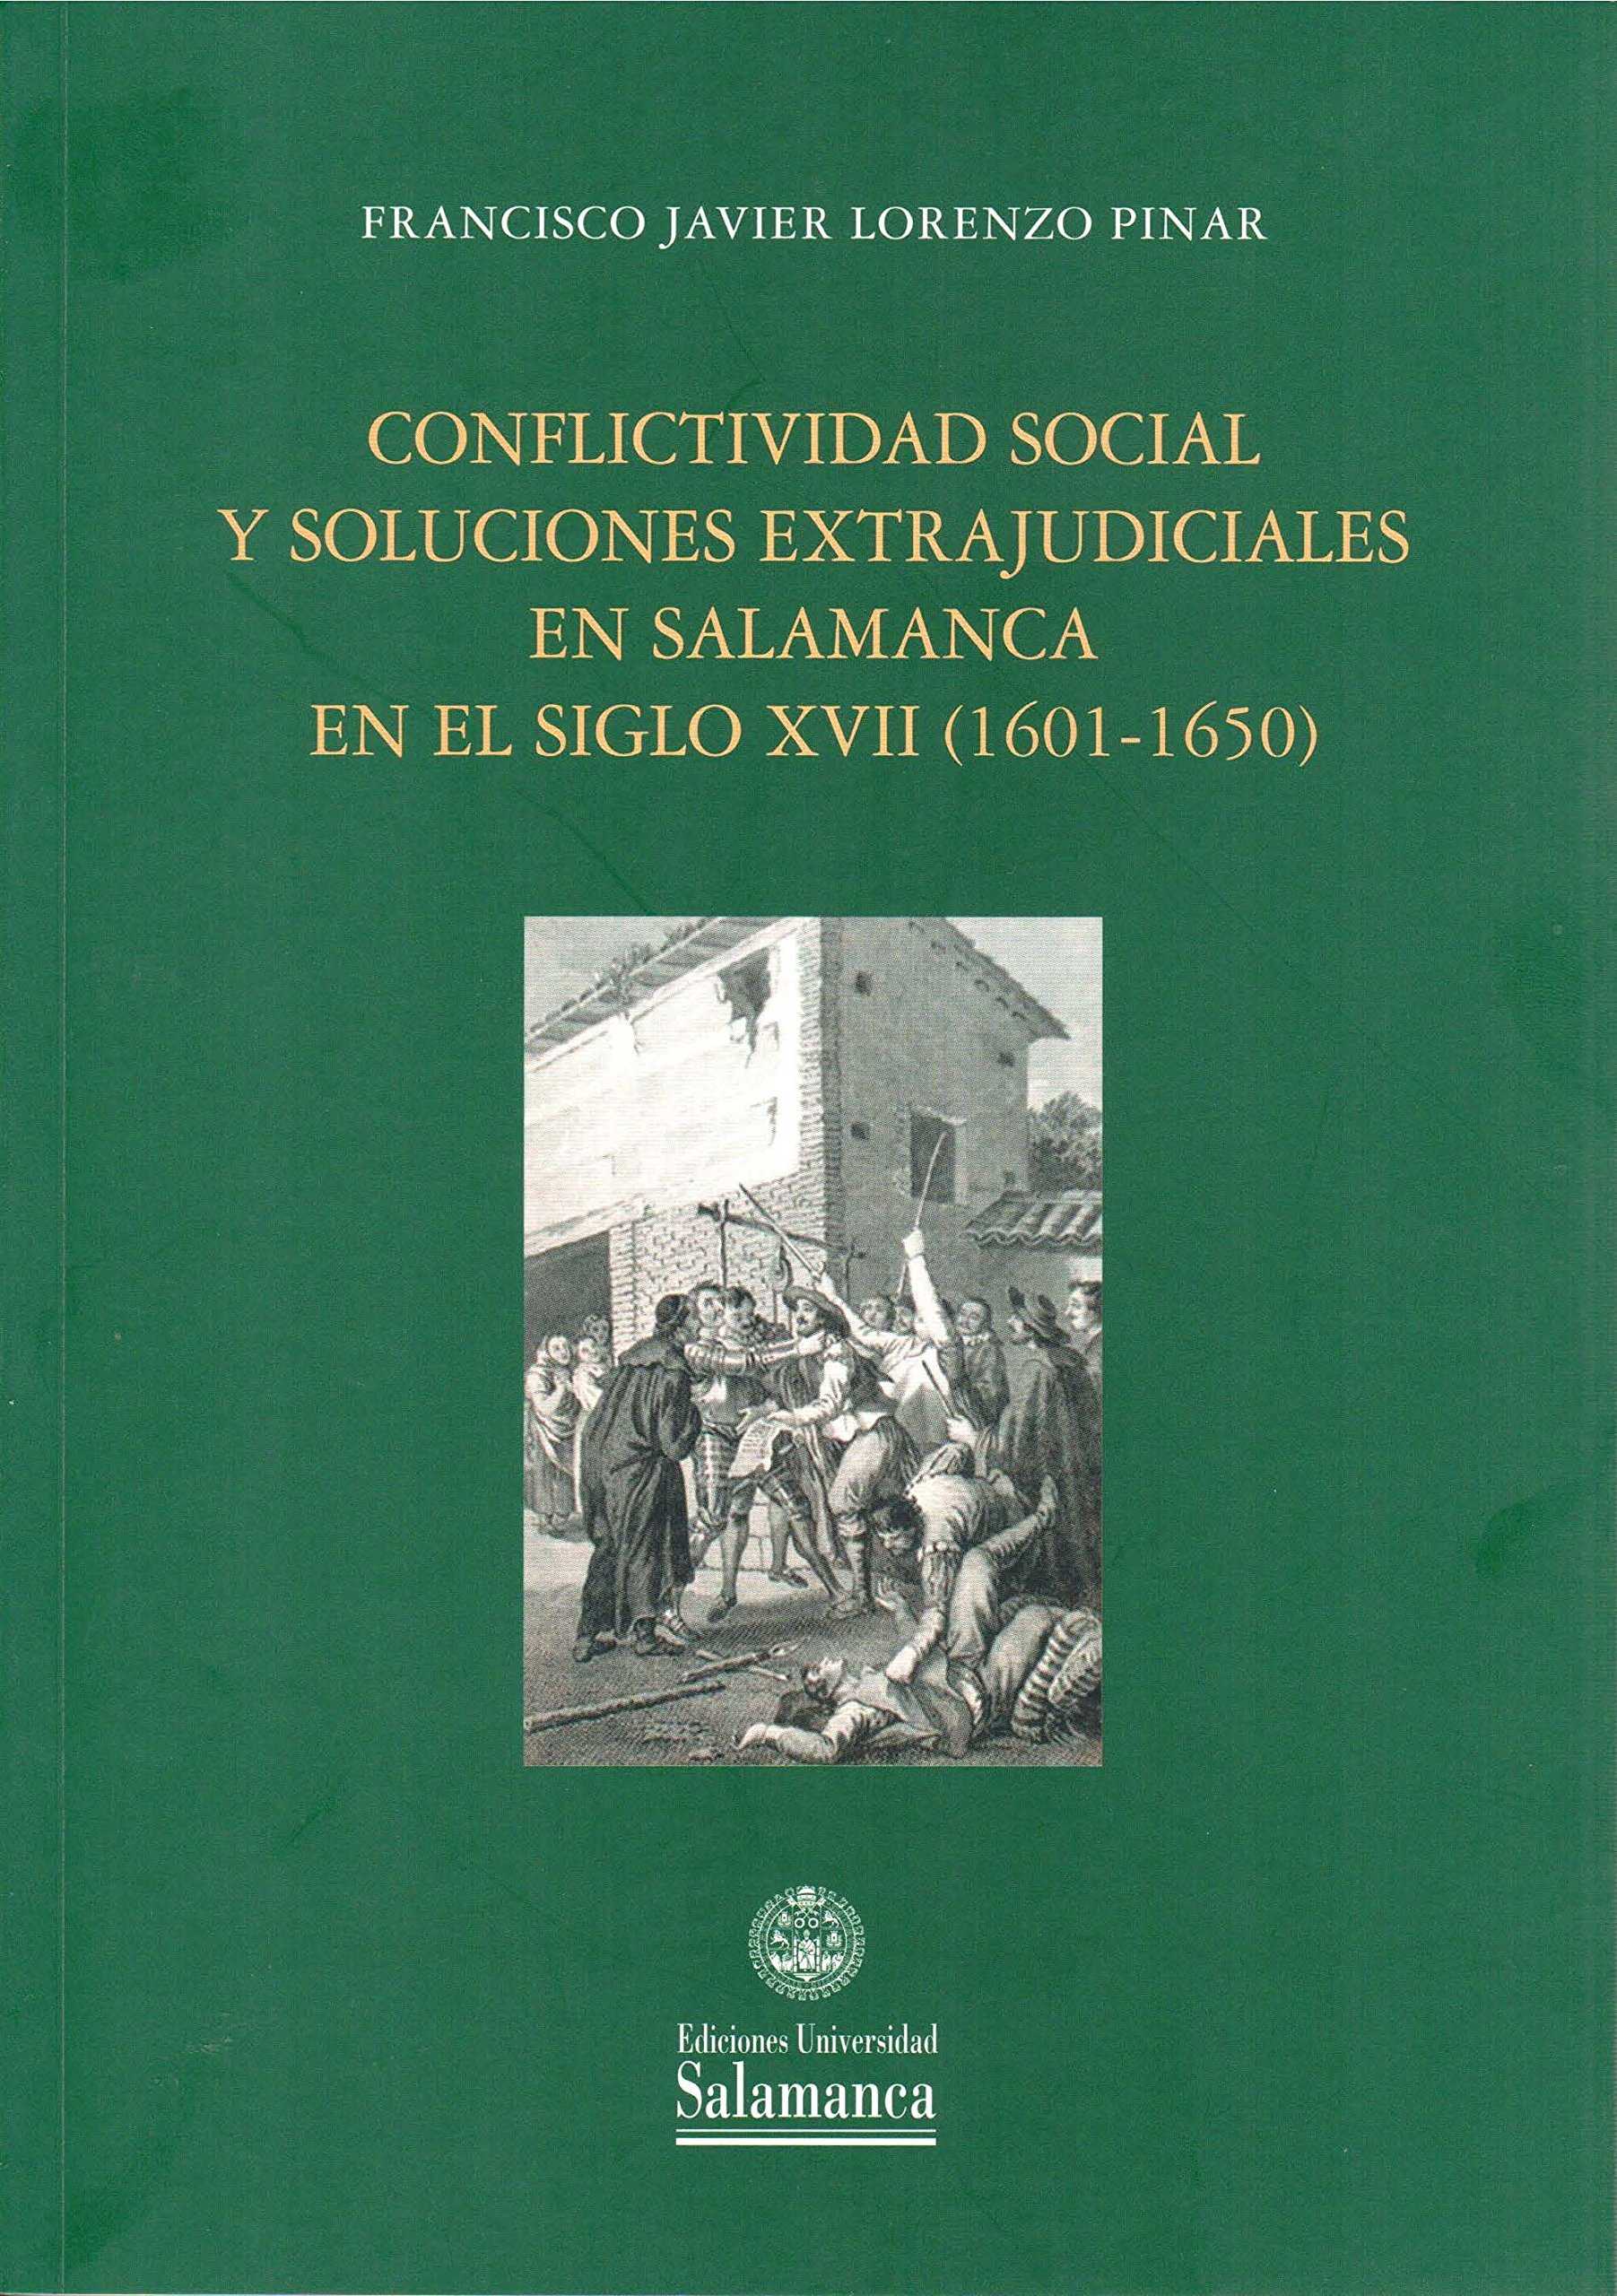 Conflictividad social y soluciones extrajudiciales en Salamanca en el siglo XVII